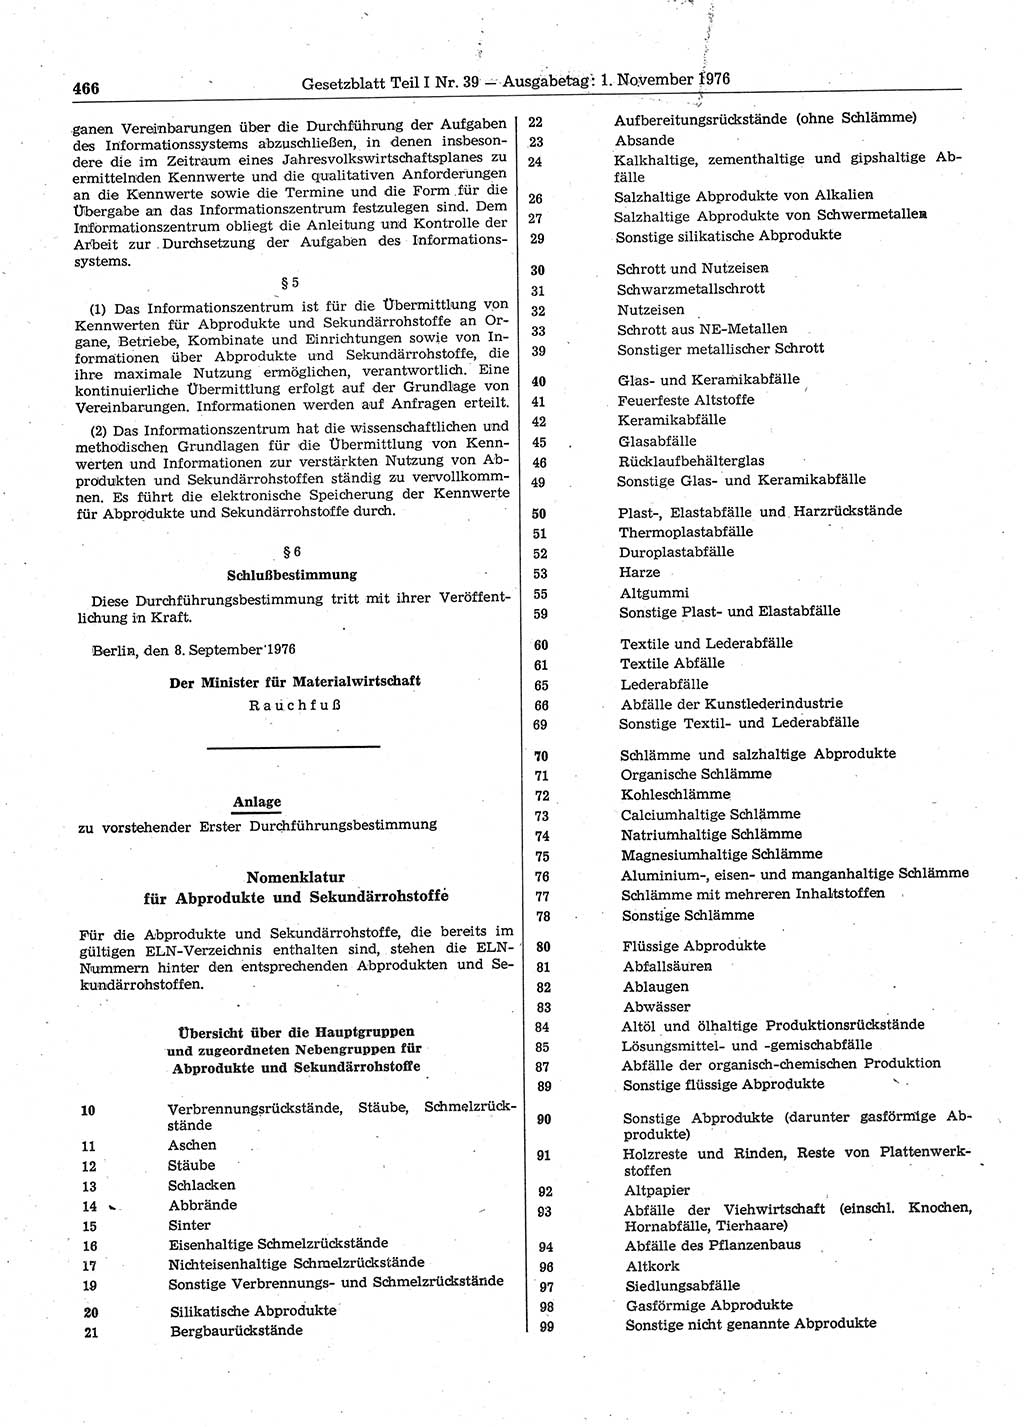 Gesetzblatt (GBl.) der Deutschen Demokratischen Republik (DDR) Teil Ⅰ 1976, Seite 466 (GBl. DDR Ⅰ 1976, S. 466)